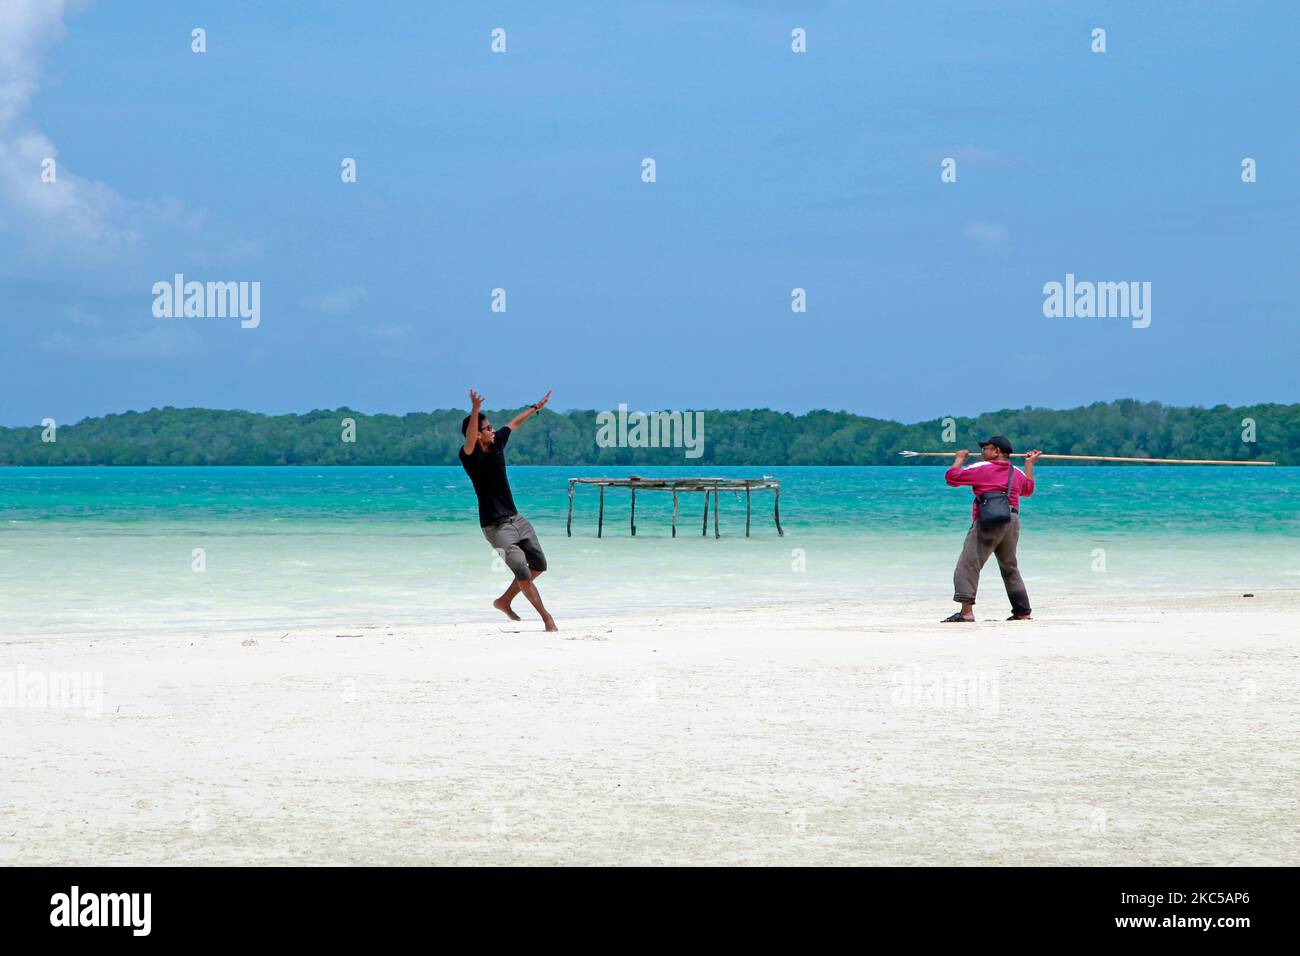 Due uomini giocano sulla spiaggia con sabbia bianca e mare turchese come sfondo. WiDi, Maluku settentrionale, Indonesia - 25 febbraio 2016 Foto Stock